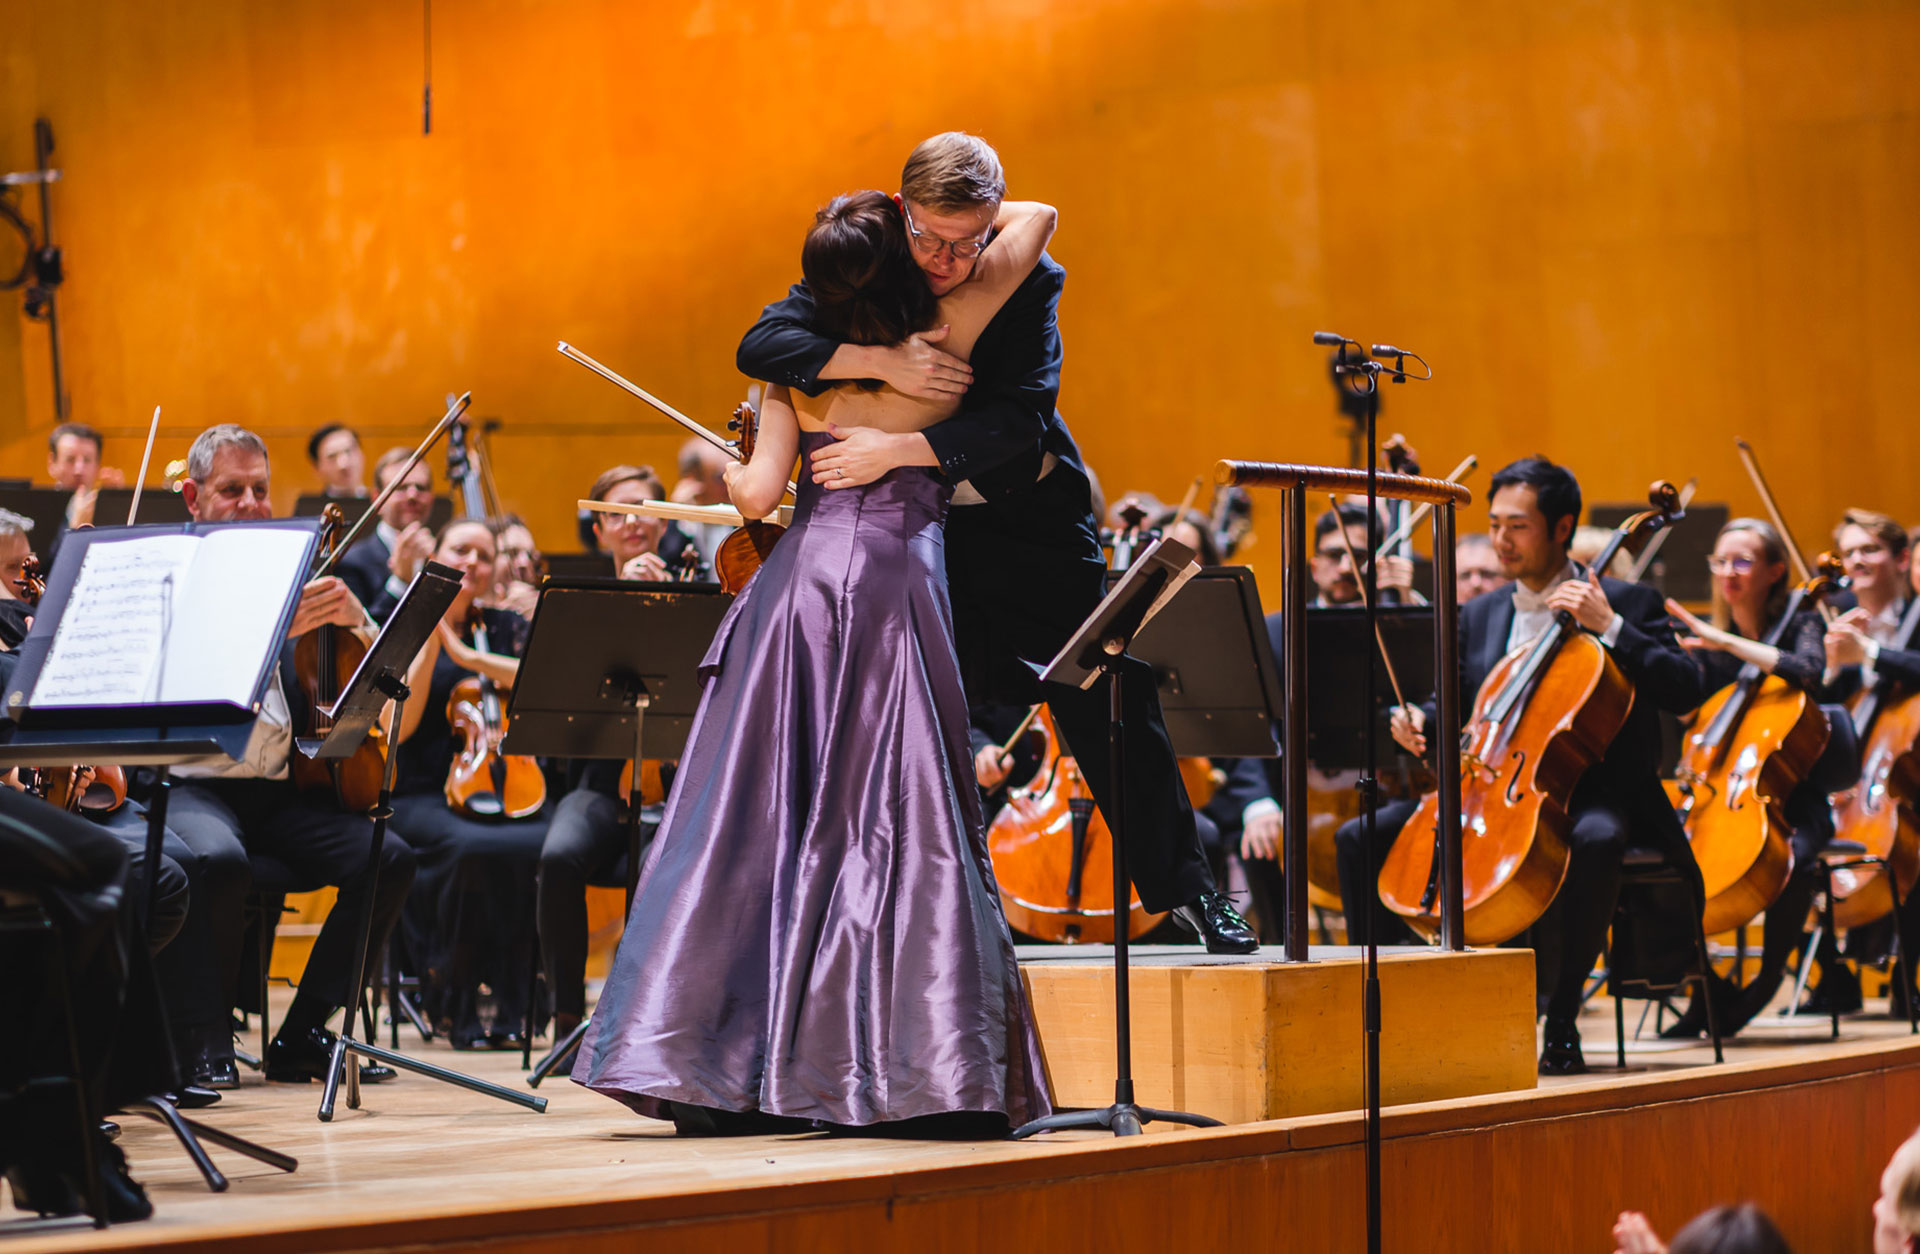 Violinsolisten Ava Bahari kramar dirigenten Pekka Kussisto efter konserten, i bakgrunden syns orkestern.